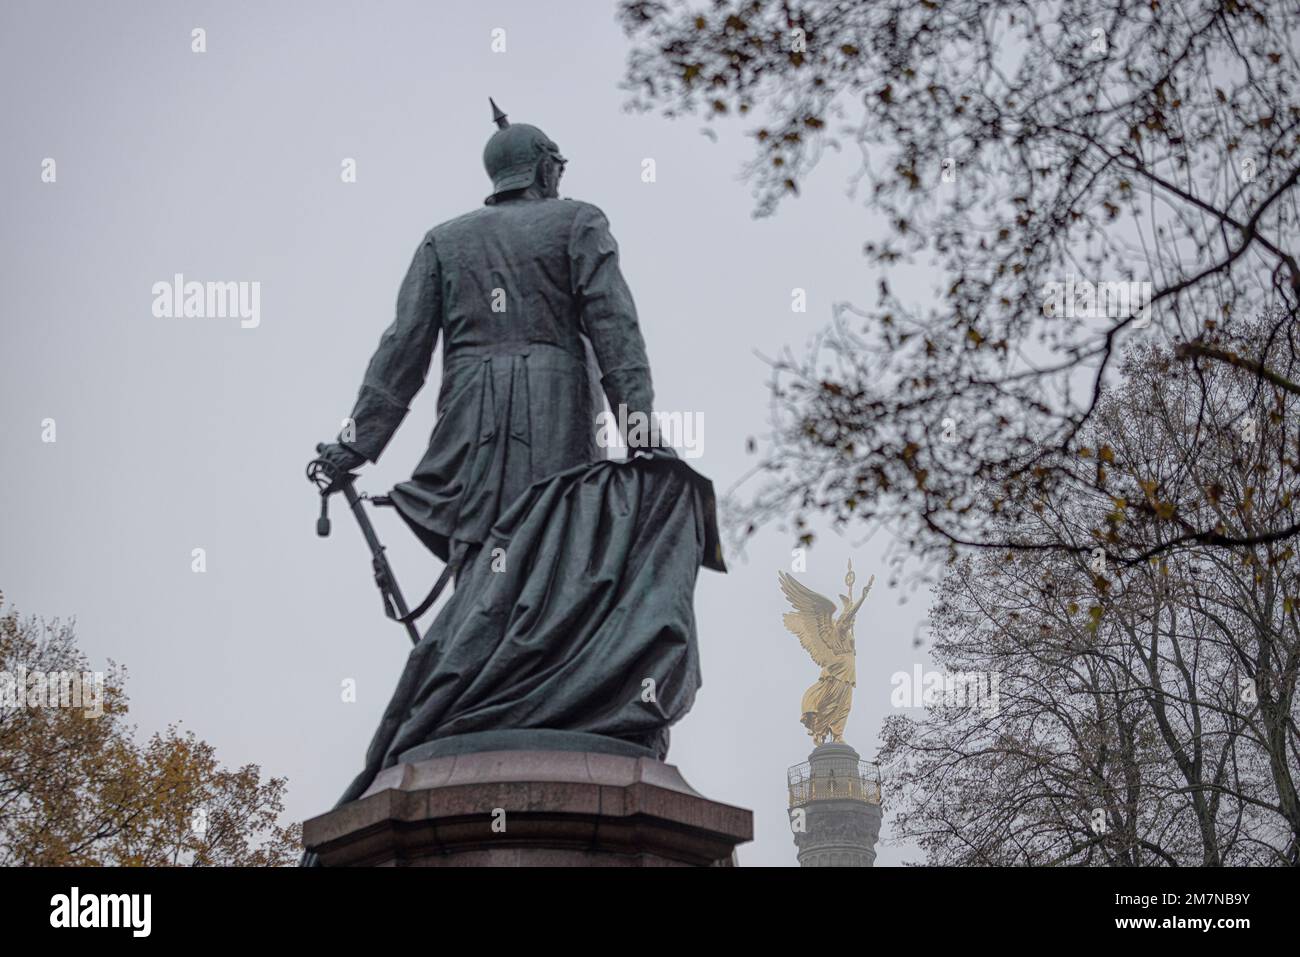 Colonna della vittoria e statua di Bismarck contro il cielo nebbioso. Berlino, Germania. Foto Stock